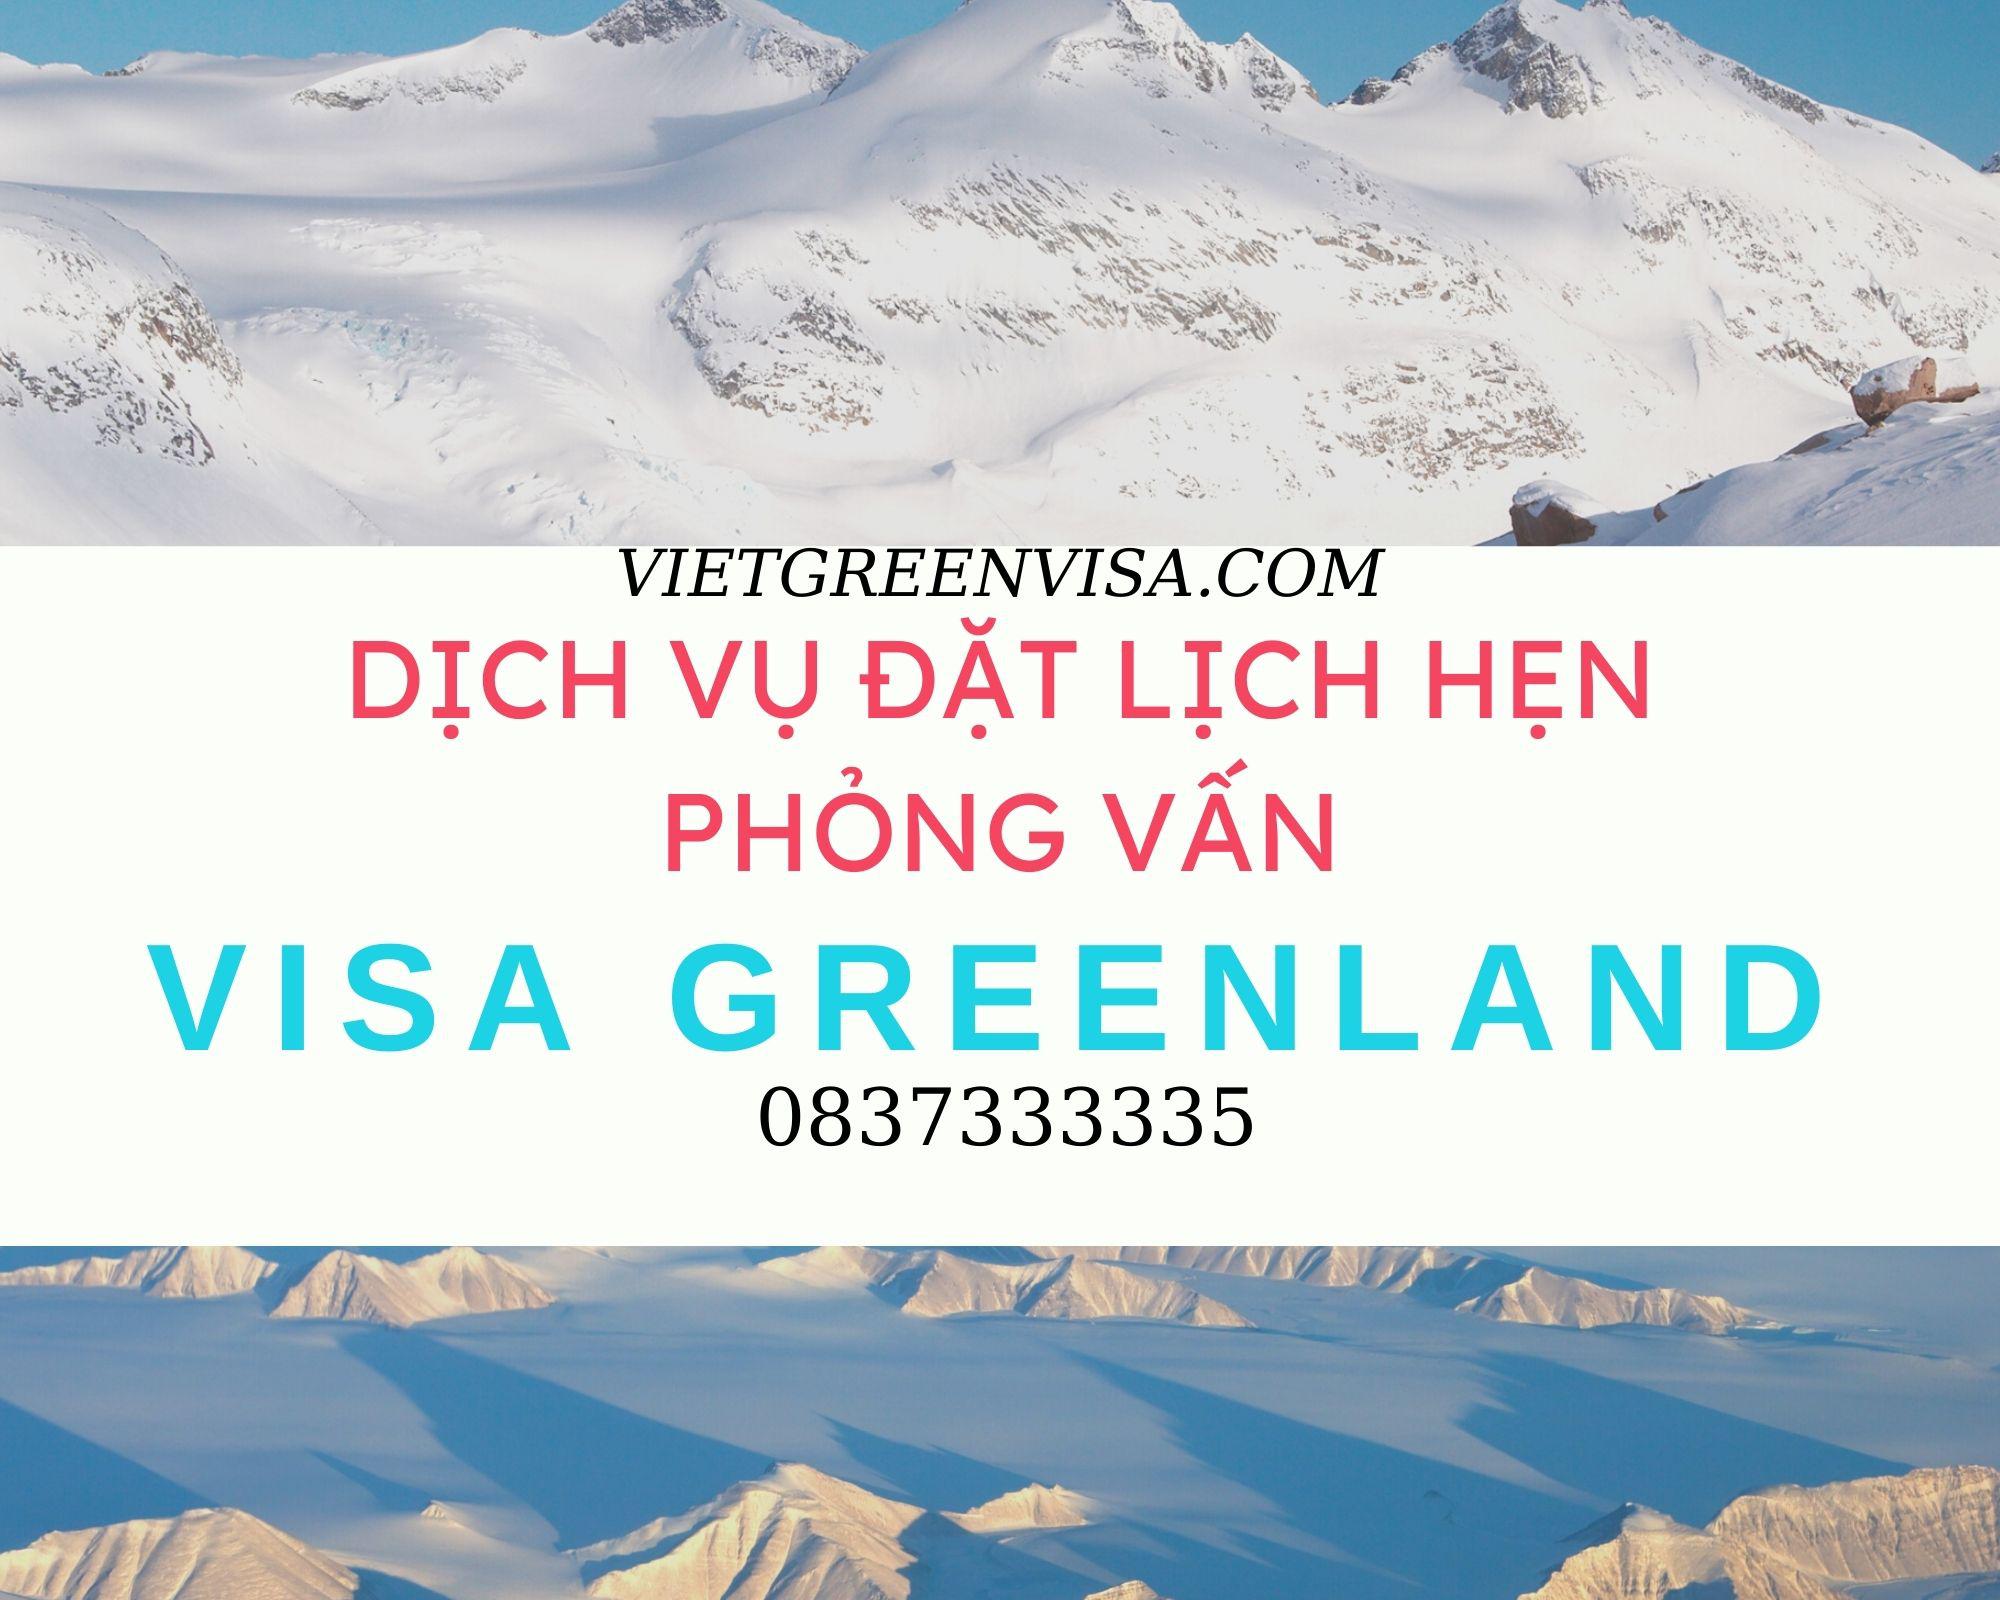 Hỗ trợ đặt lịch hẹn phỏng vấn visa Greenland